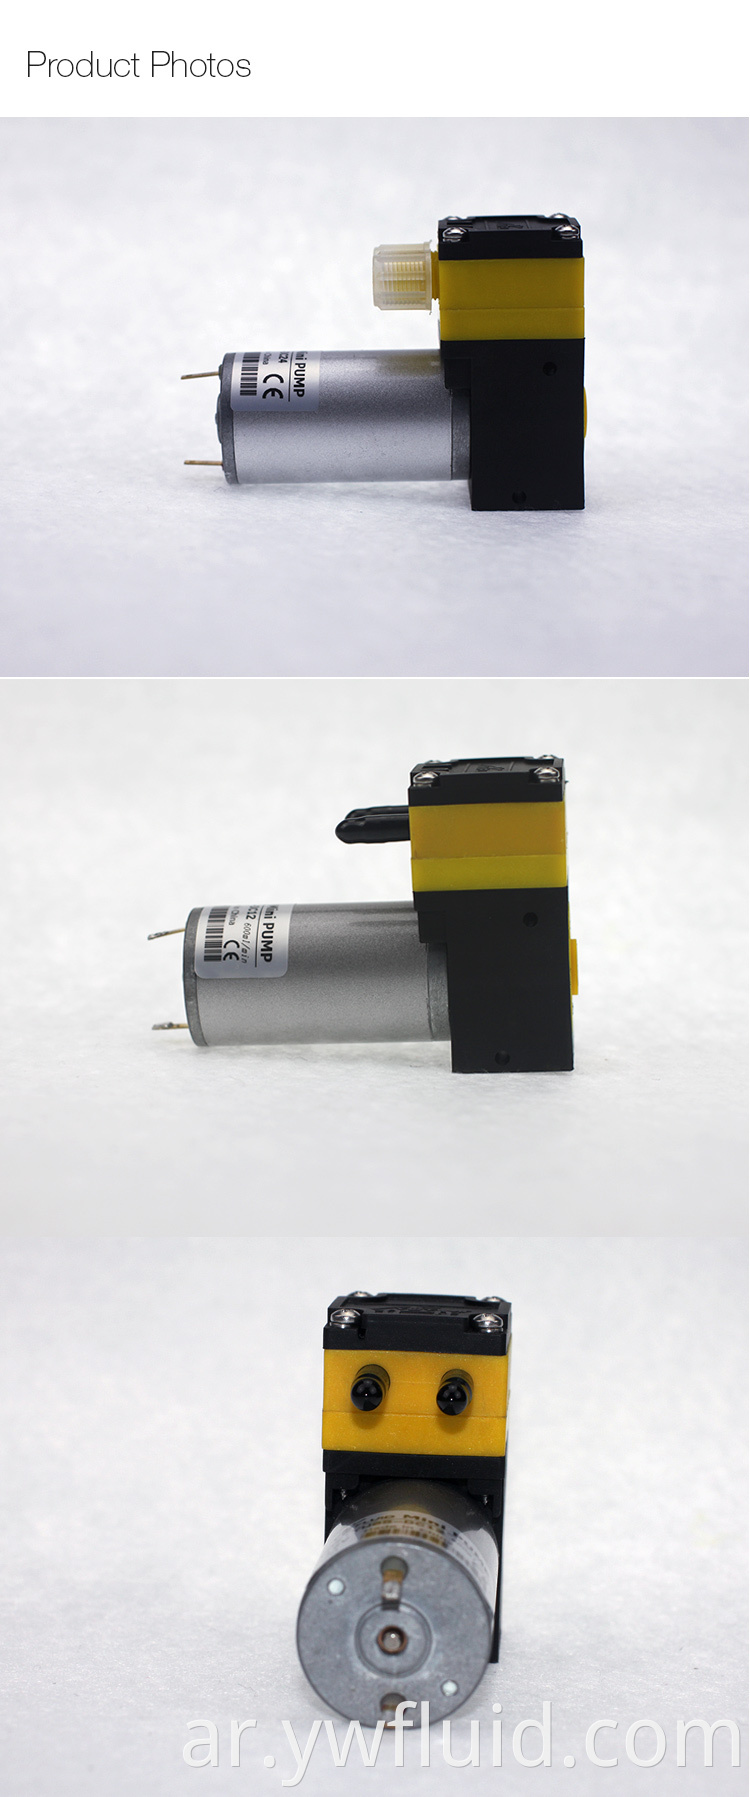 ywfluid 12v 24v مضخة مضادة للتآكل الدقيقة مع معدل تدفق الهواء 3L/دقيقة معدل تدفق السائل 600 مل/دقيقة مضخة غاز ثنائية الغاز